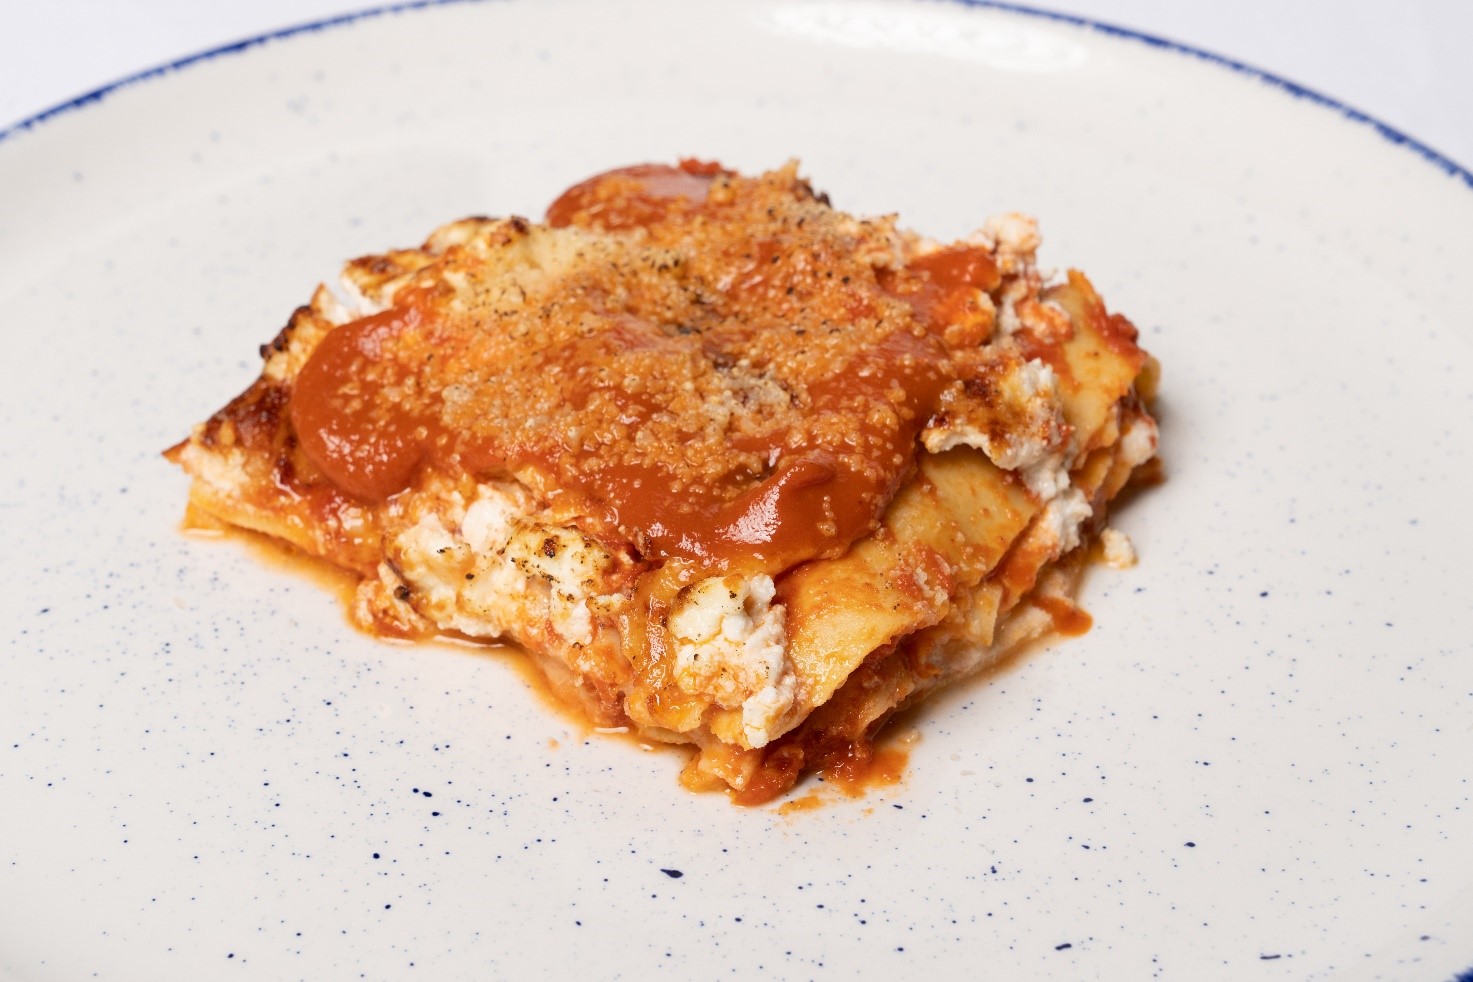 Lasagna with tomato, mozzarella and ricotta